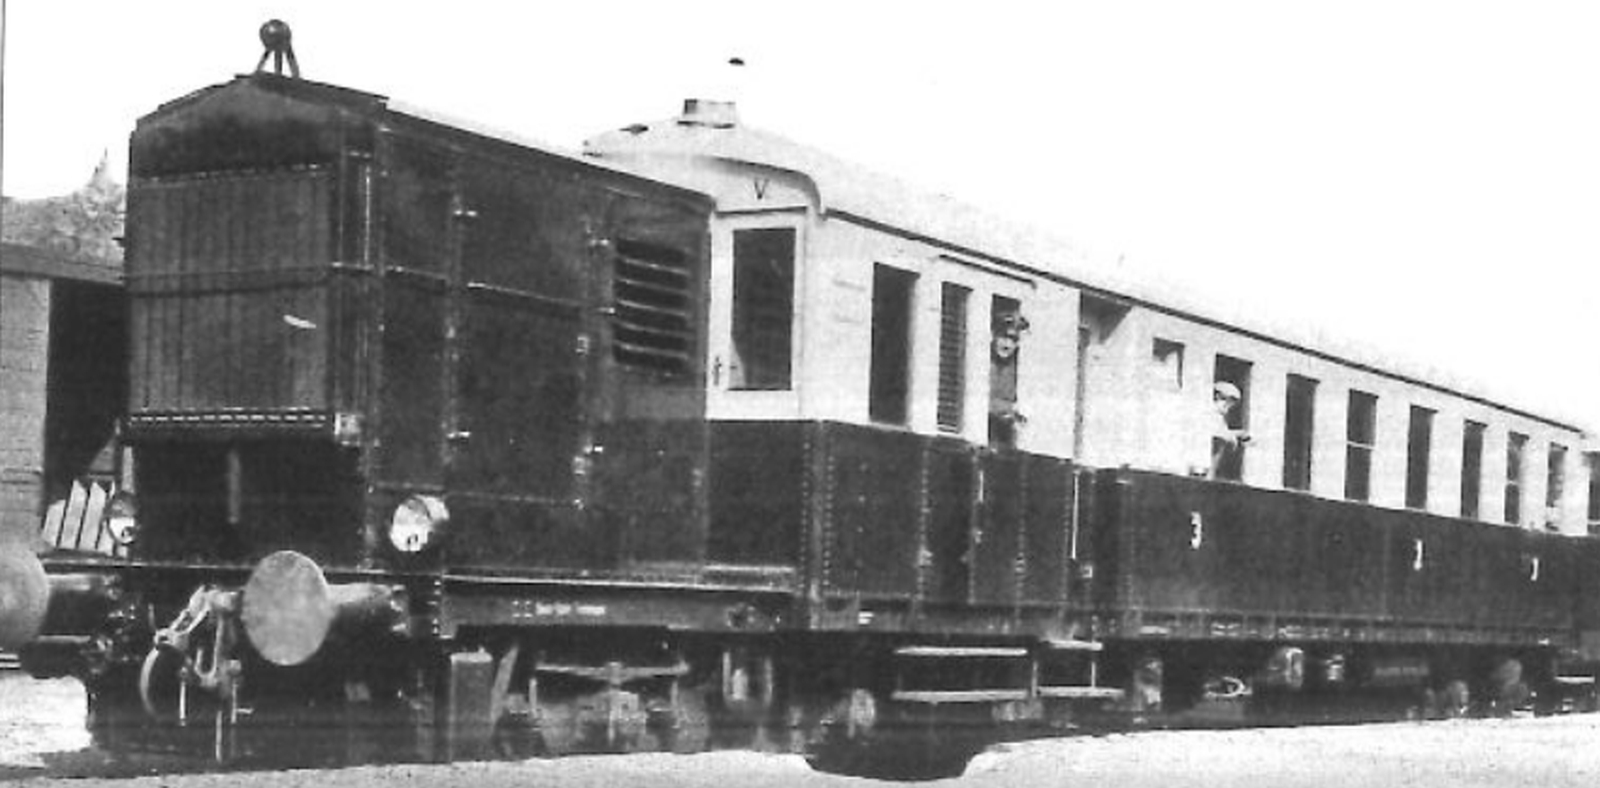 T 04 around 1935